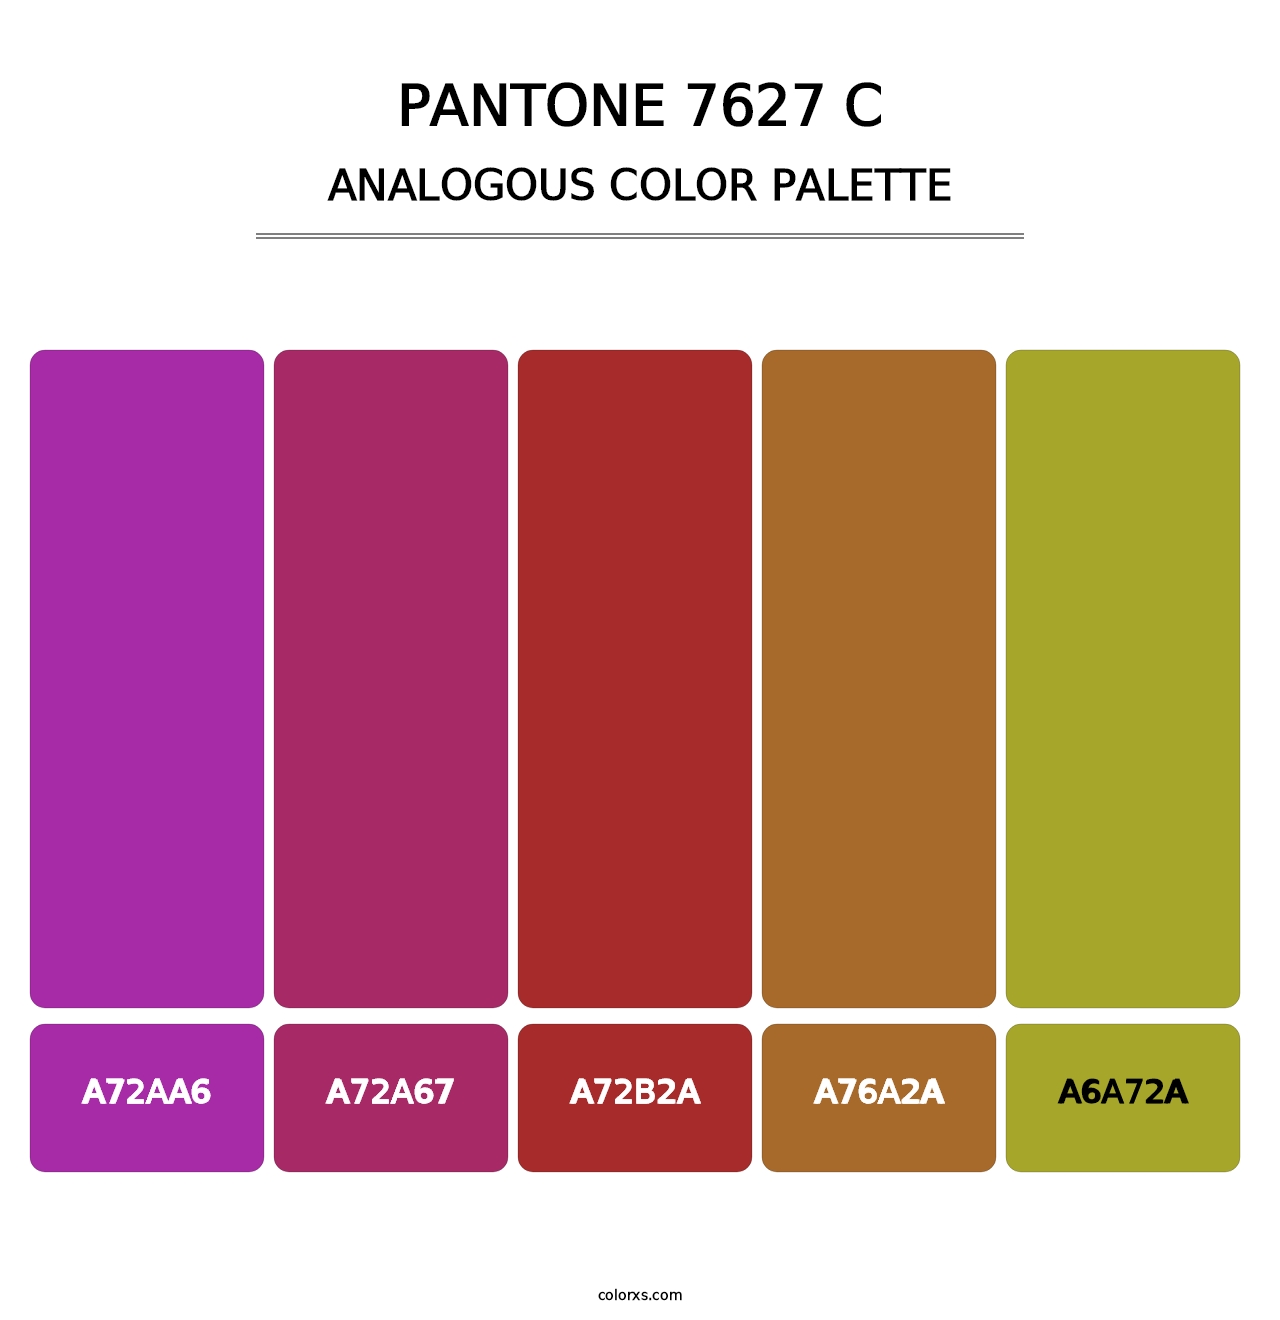 PANTONE 7627 C - Analogous Color Palette